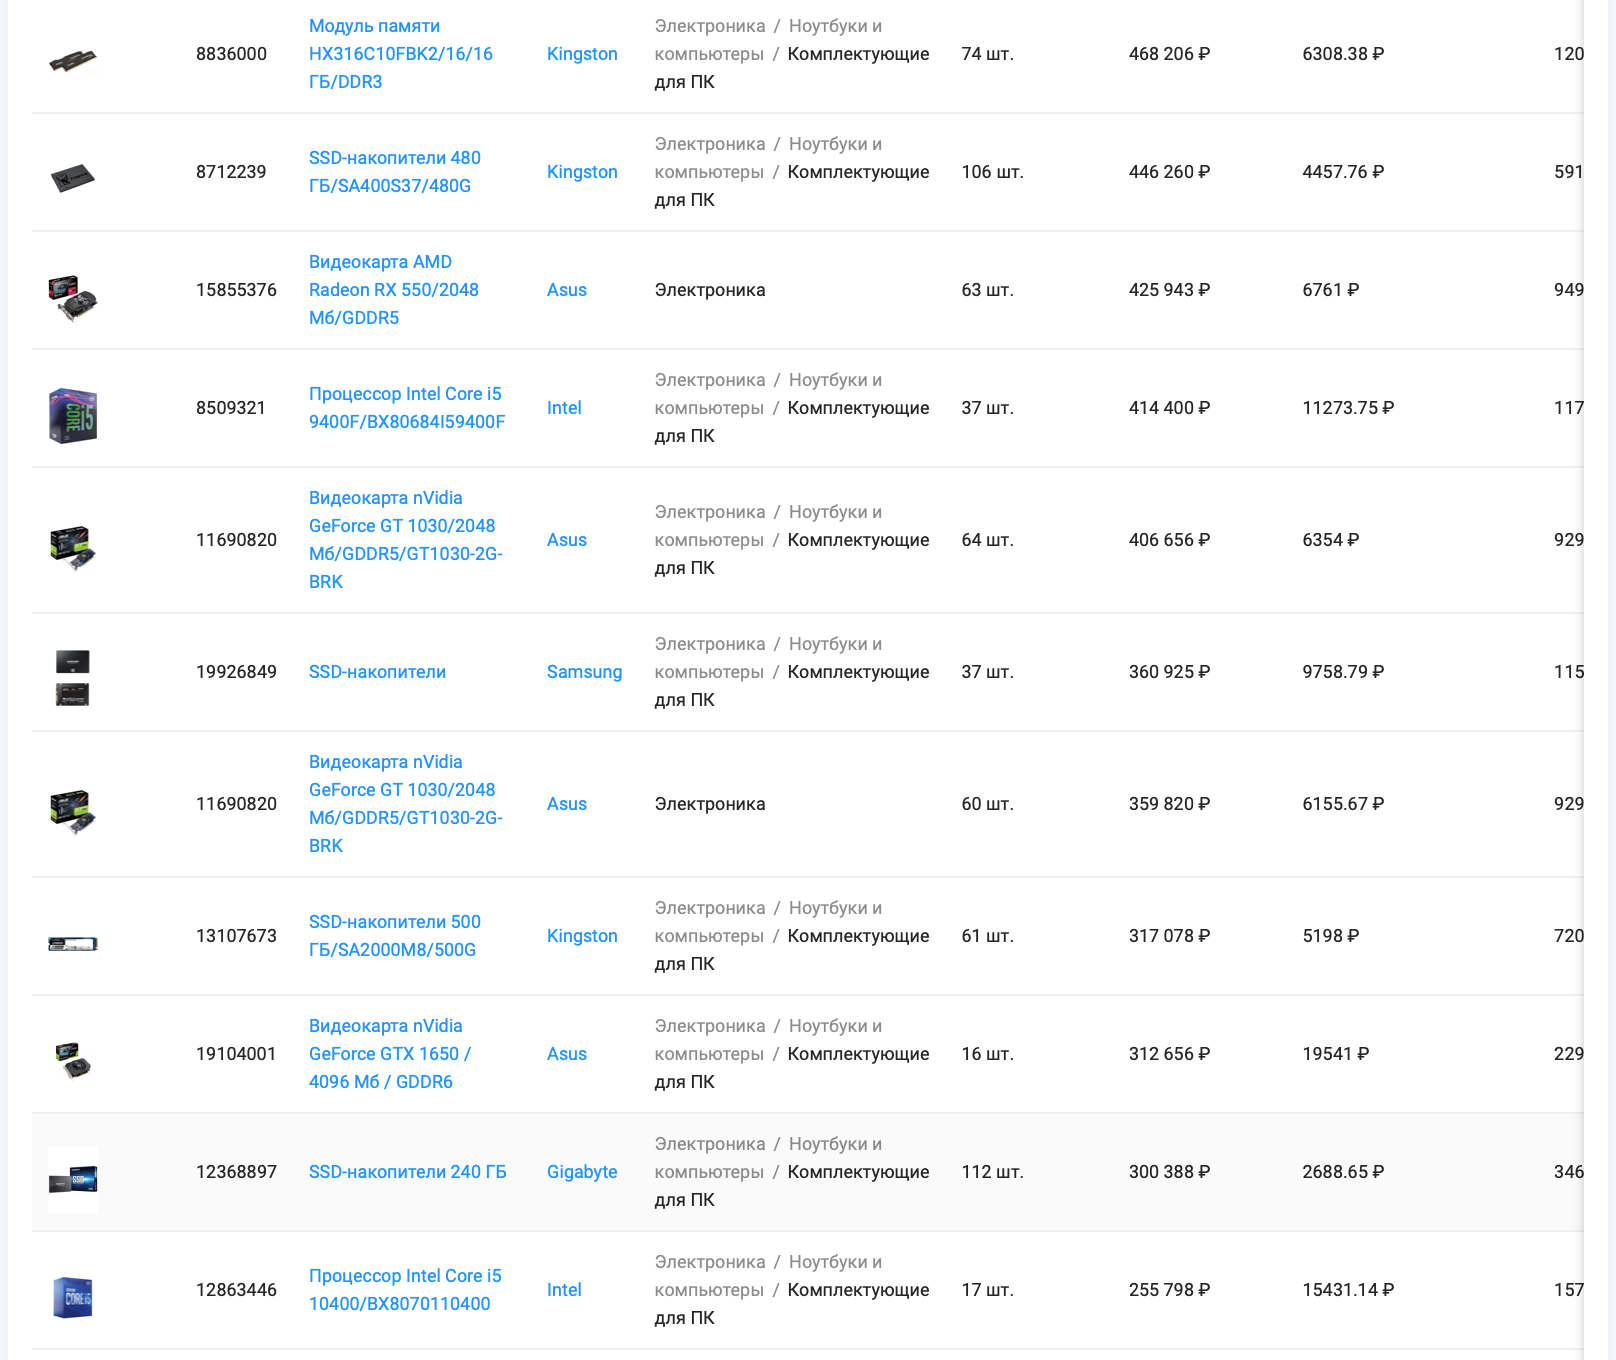 Список лидеров по объему выручки товаров категории “Комплектующие для ПК” маркетплейса Wildberries, период 1.04 - 30.04.21, данные сервиса аналитики SellerFox